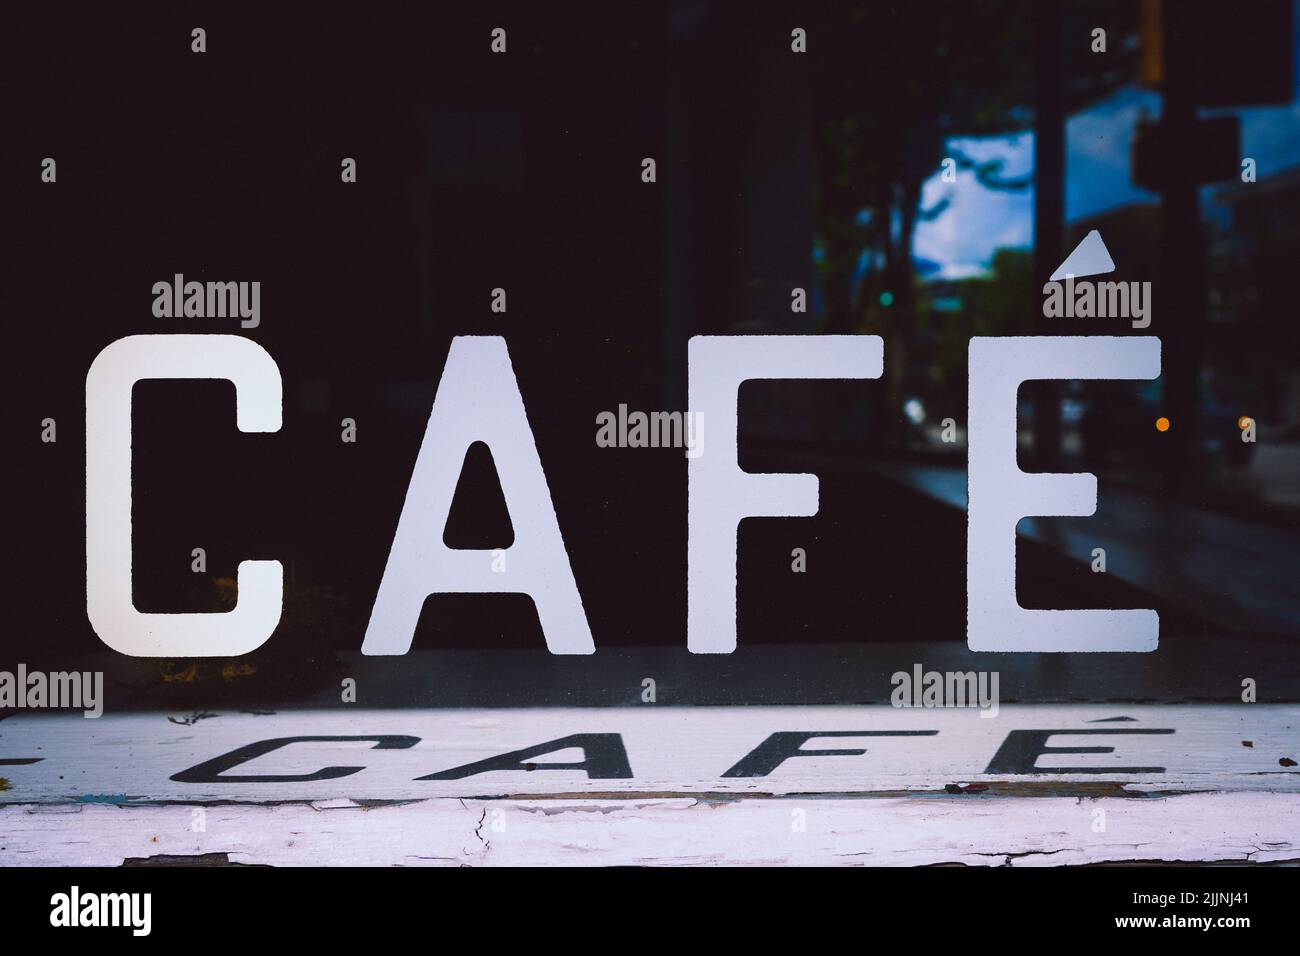 Eine szenische Aufnahme eines Banners 'Cafe' im Dunkeln Stockfoto